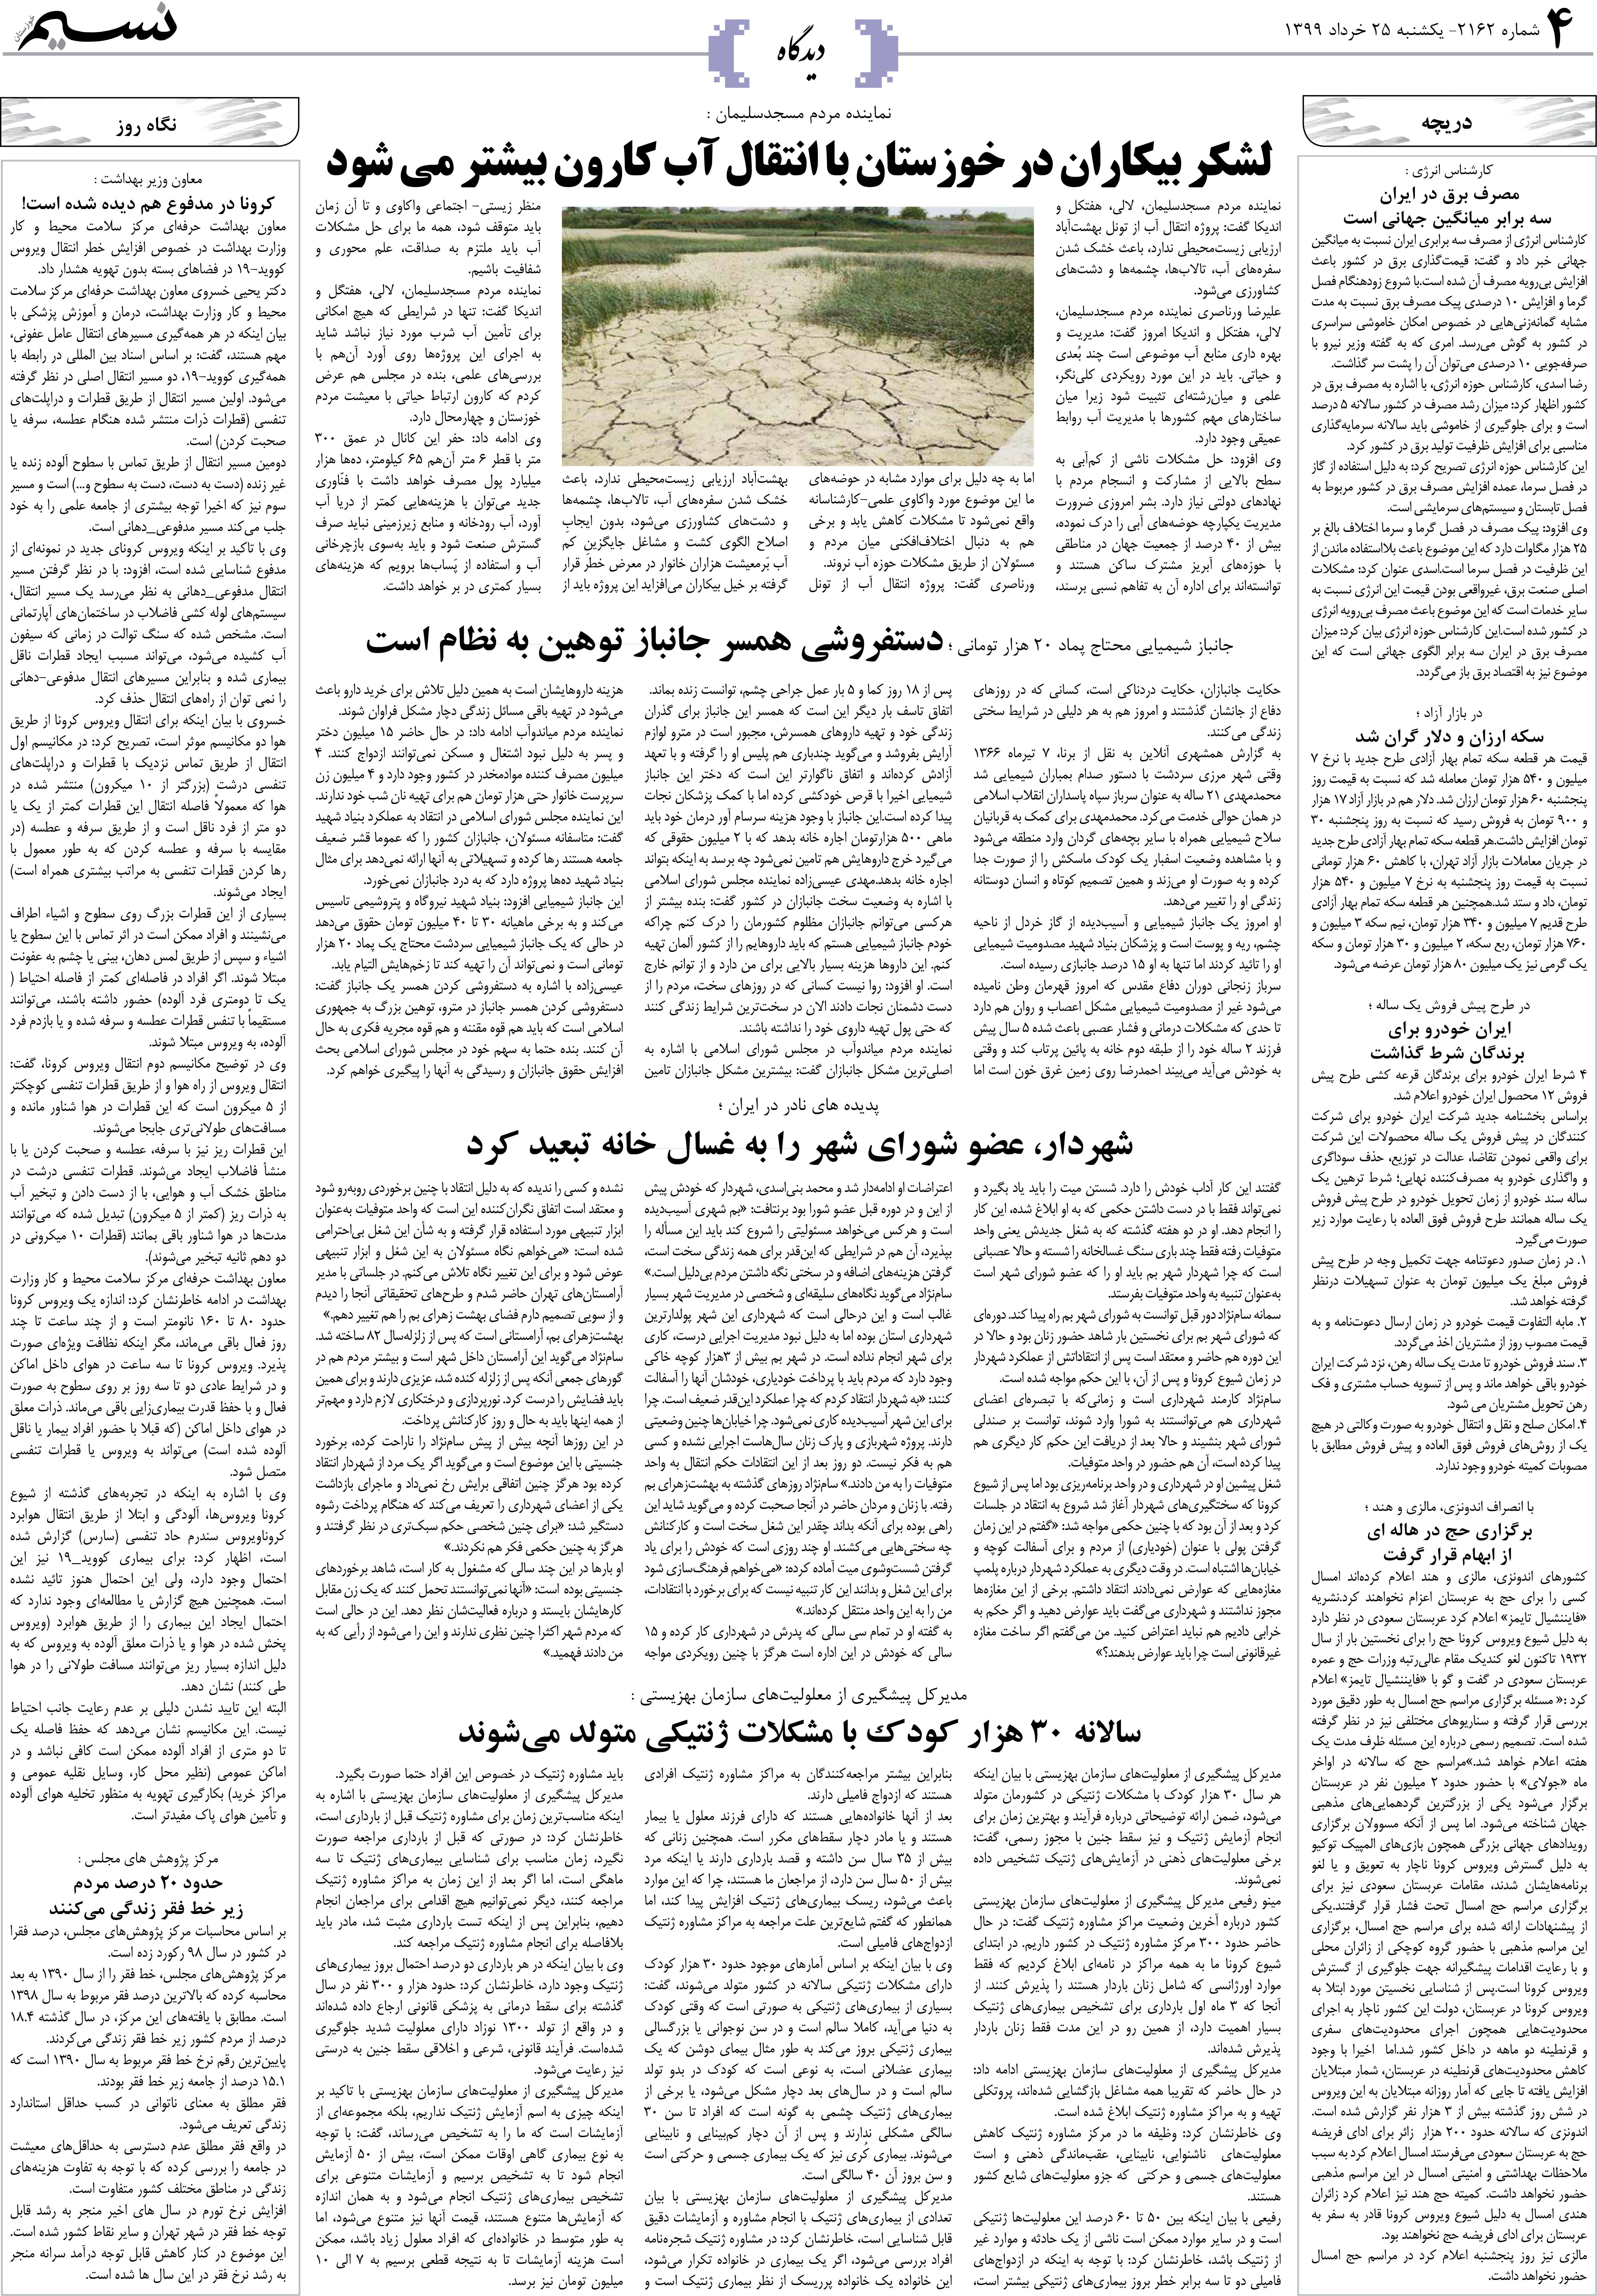 صفحه دیدگاه روزنامه نسیم شماره 2162